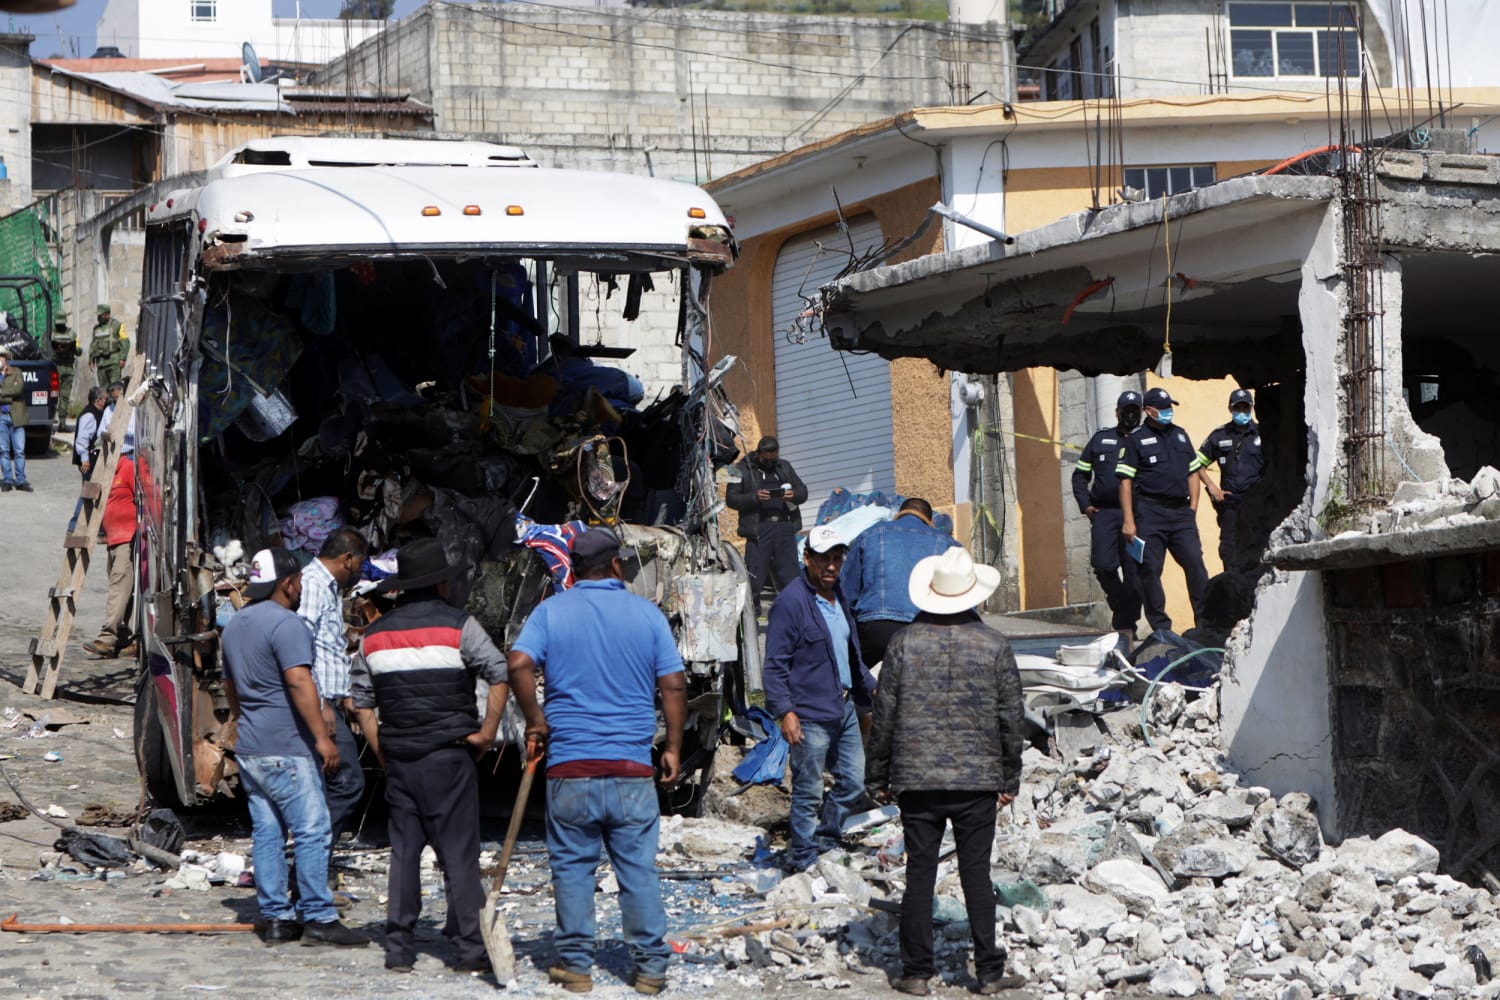 19 dead, 32 injured in Mexico religious site pilgrimage bus crash